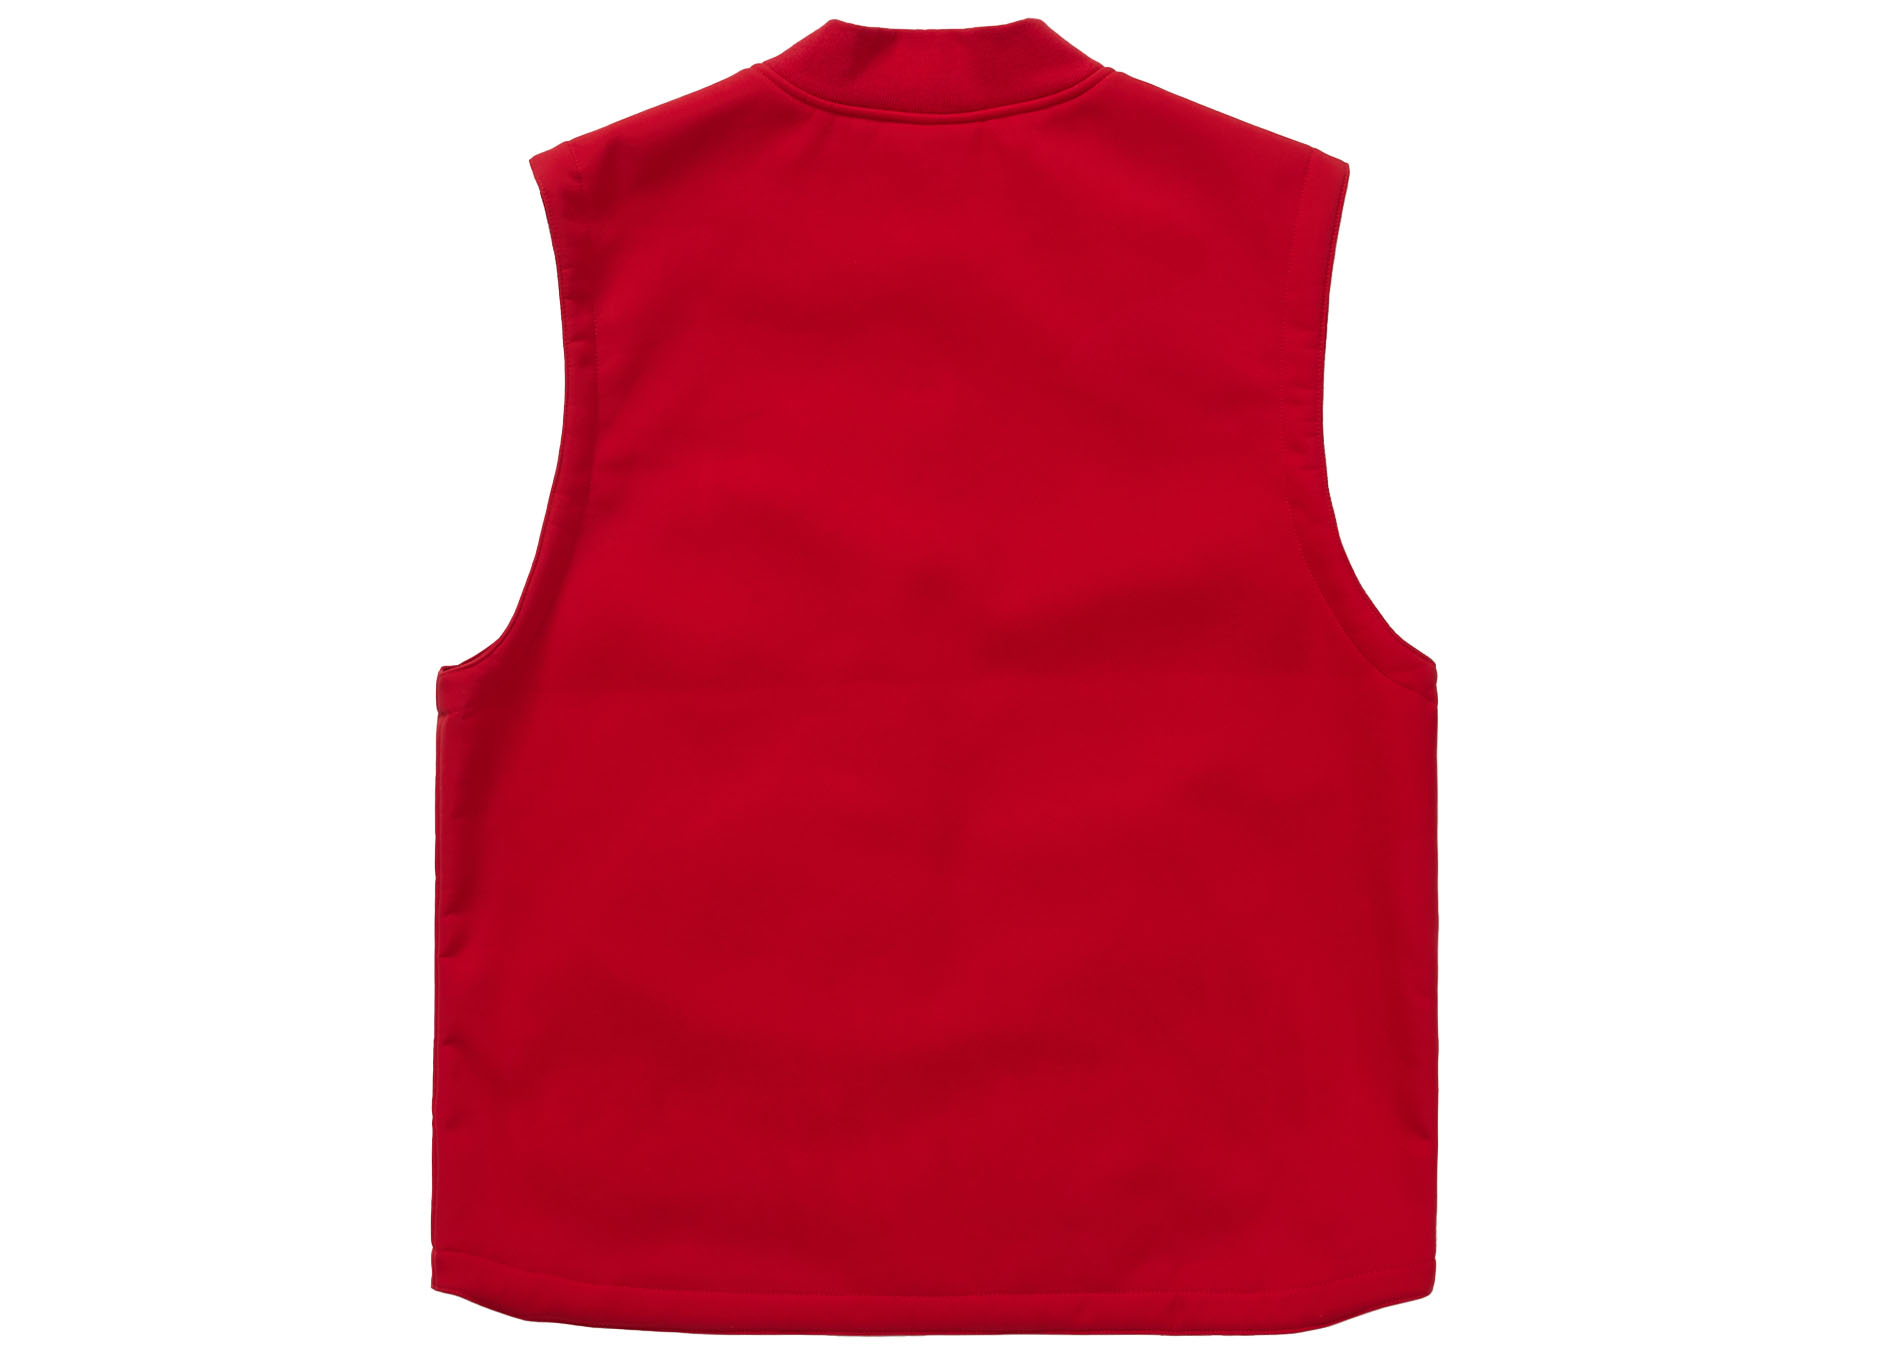 Supreme WINDSTOPPER Work Vest Red Men's - FW22 - US